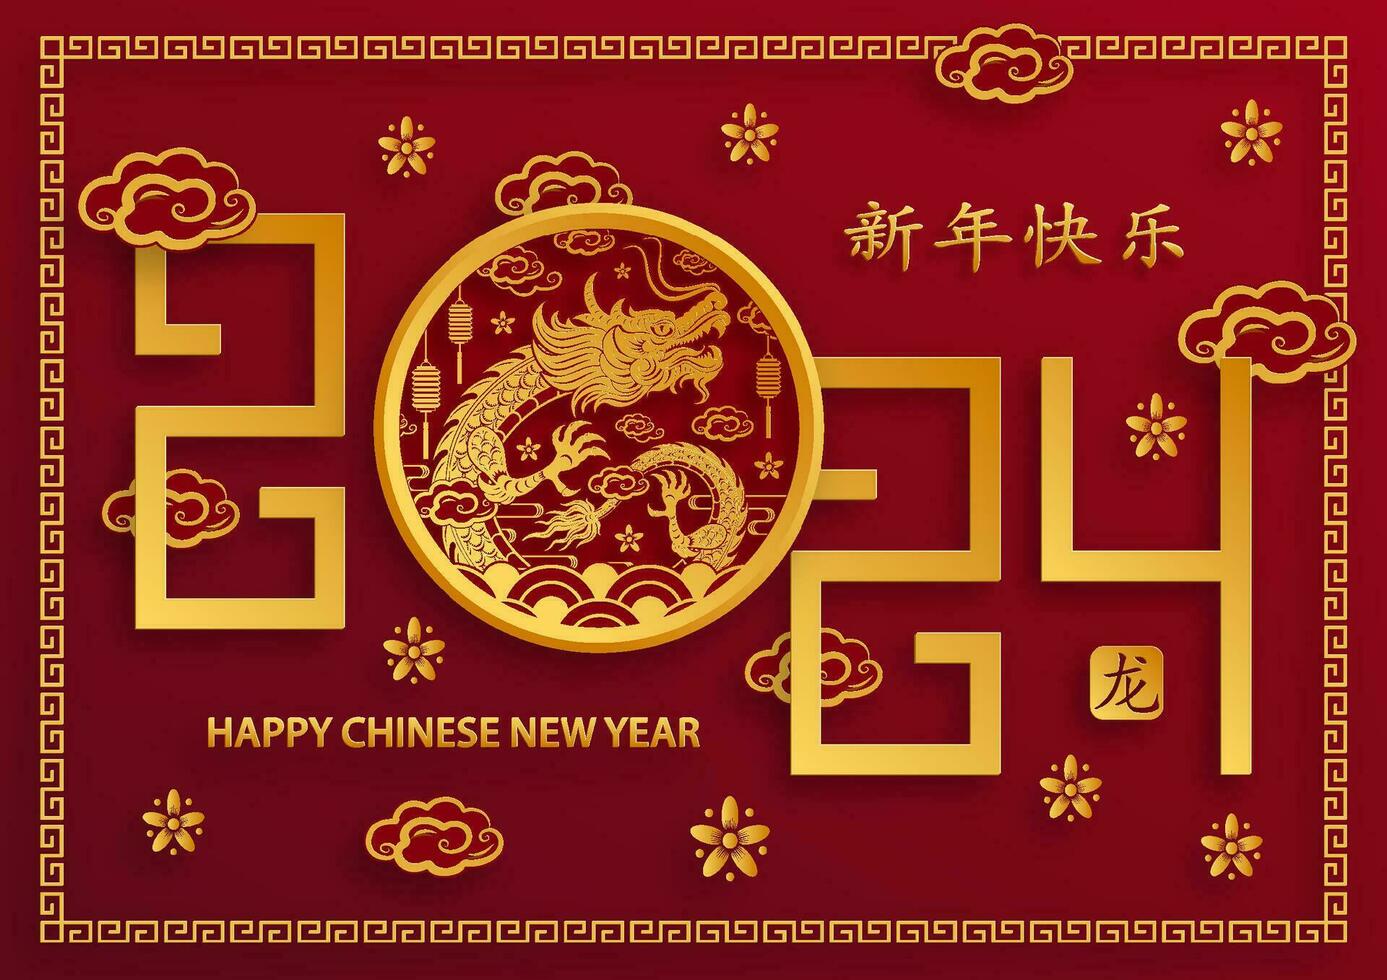 Lycklig kinesisk ny år 2024 zodiaken tecken år av de drake vektor